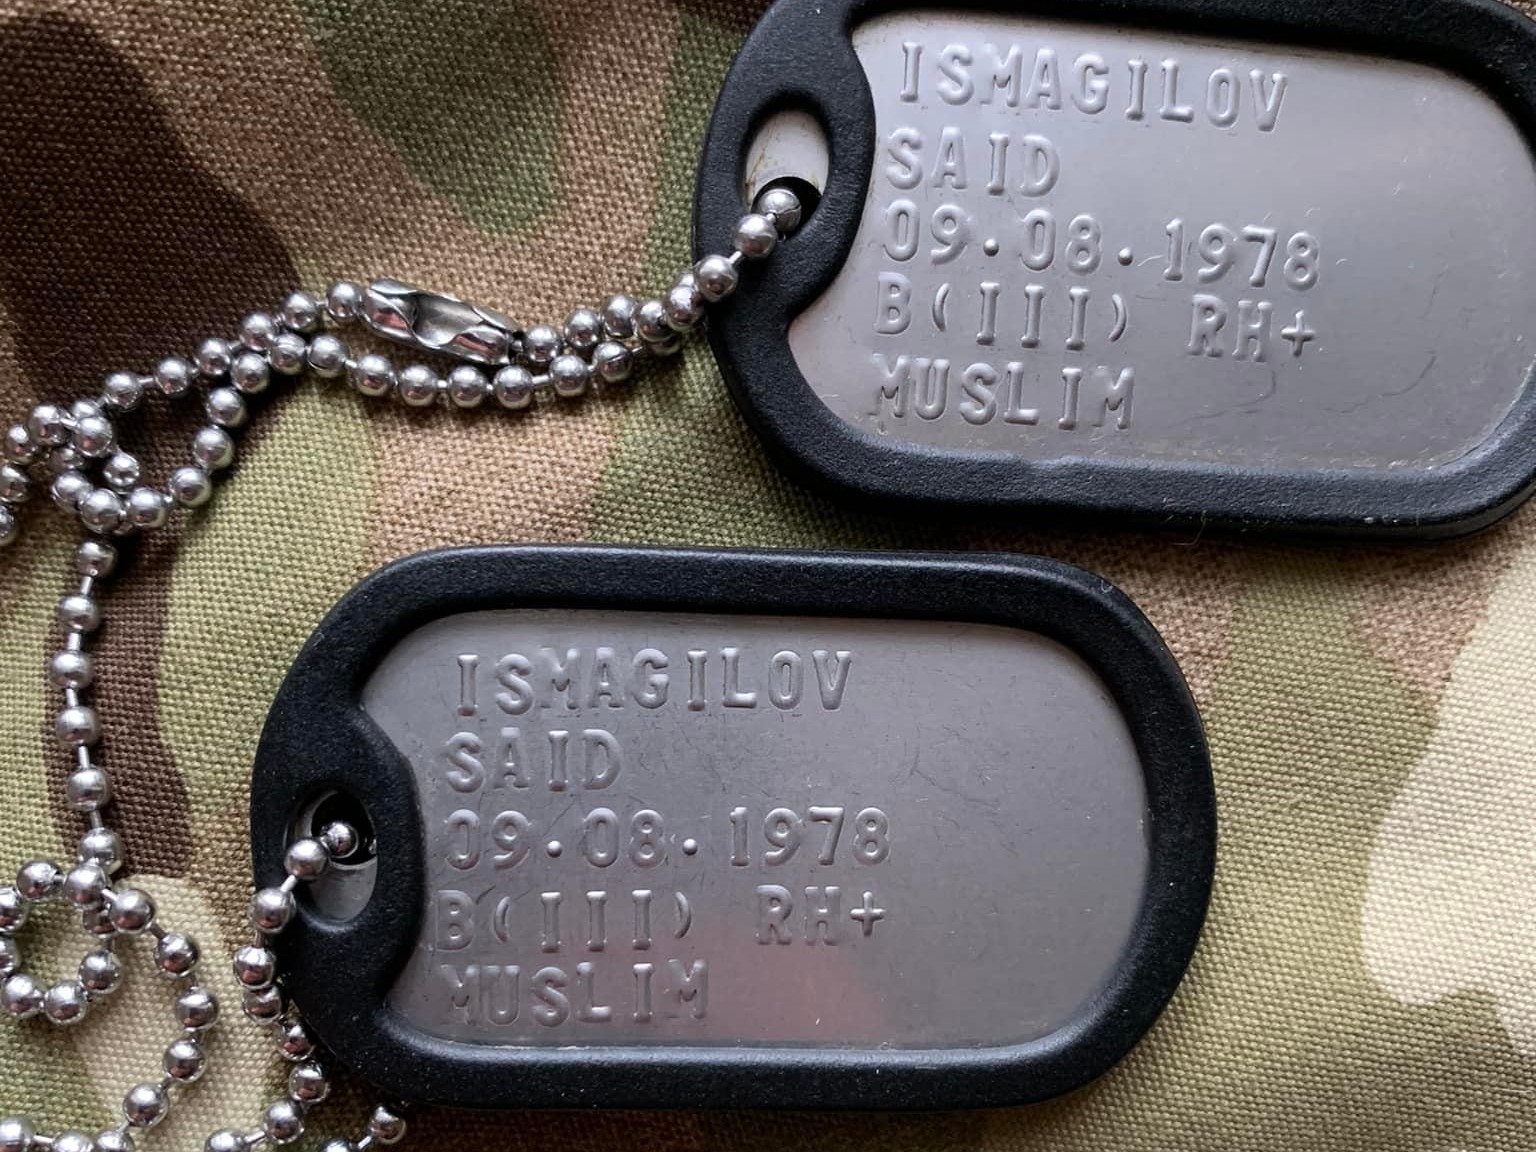 Said Imagilov's military dog tags (Facebook)